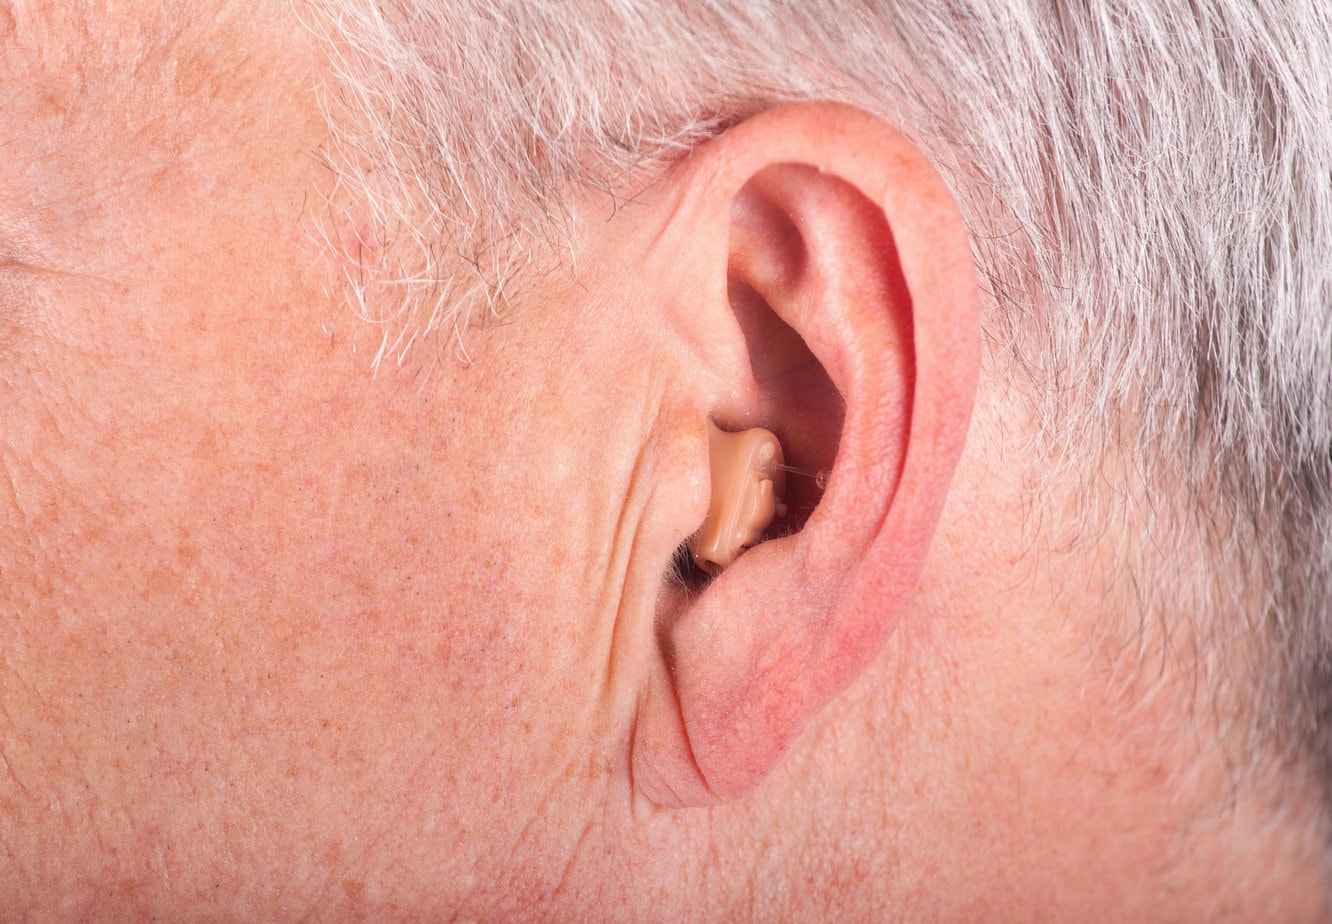 Mini Höhrgerät im Ohr eines Mannes